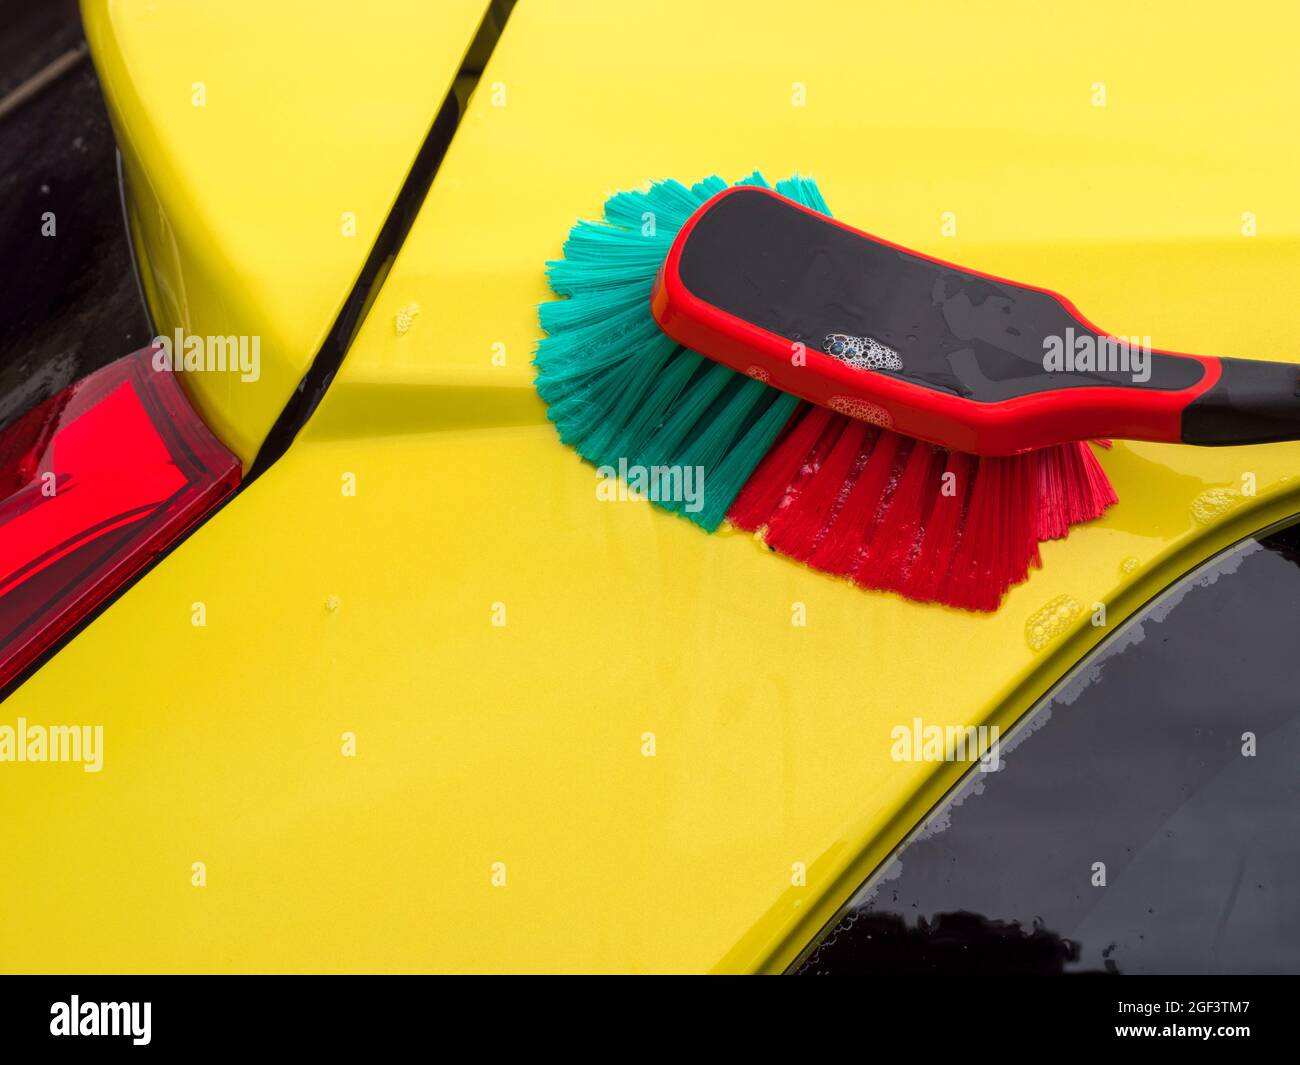 Gros plan POV d’une brosse à poils souples et d’eau savonneuse servant à nettoyer/laver la peinture d’une voiture jaune. Banque D'Images